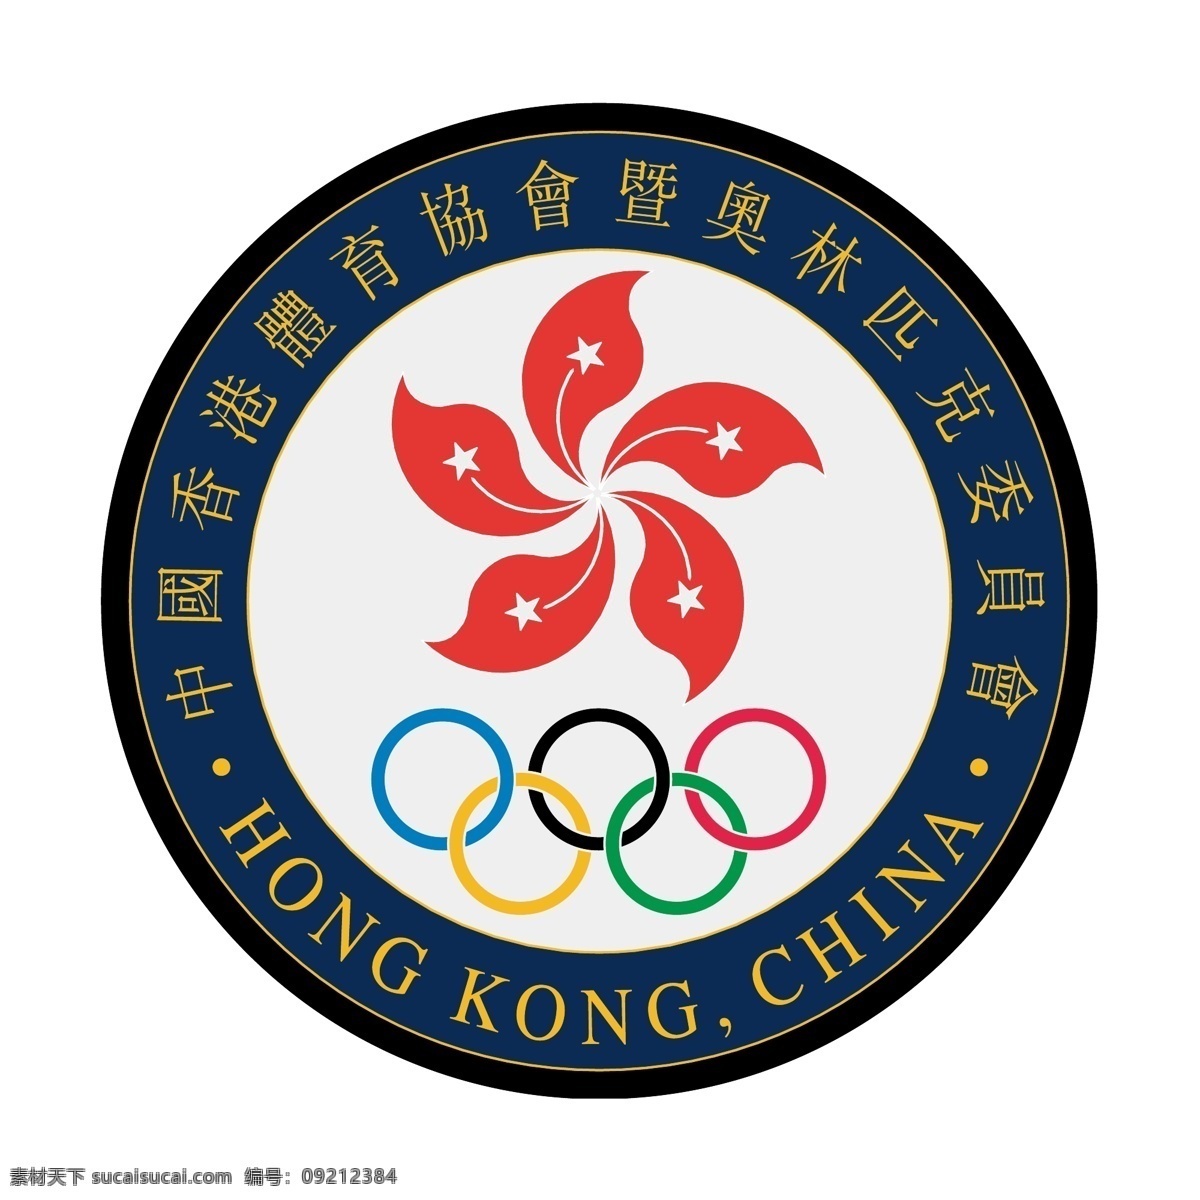 香港 体育 协会 暨 奥林匹克 委员会 免费 标志 自由 psd源文件 logo设计